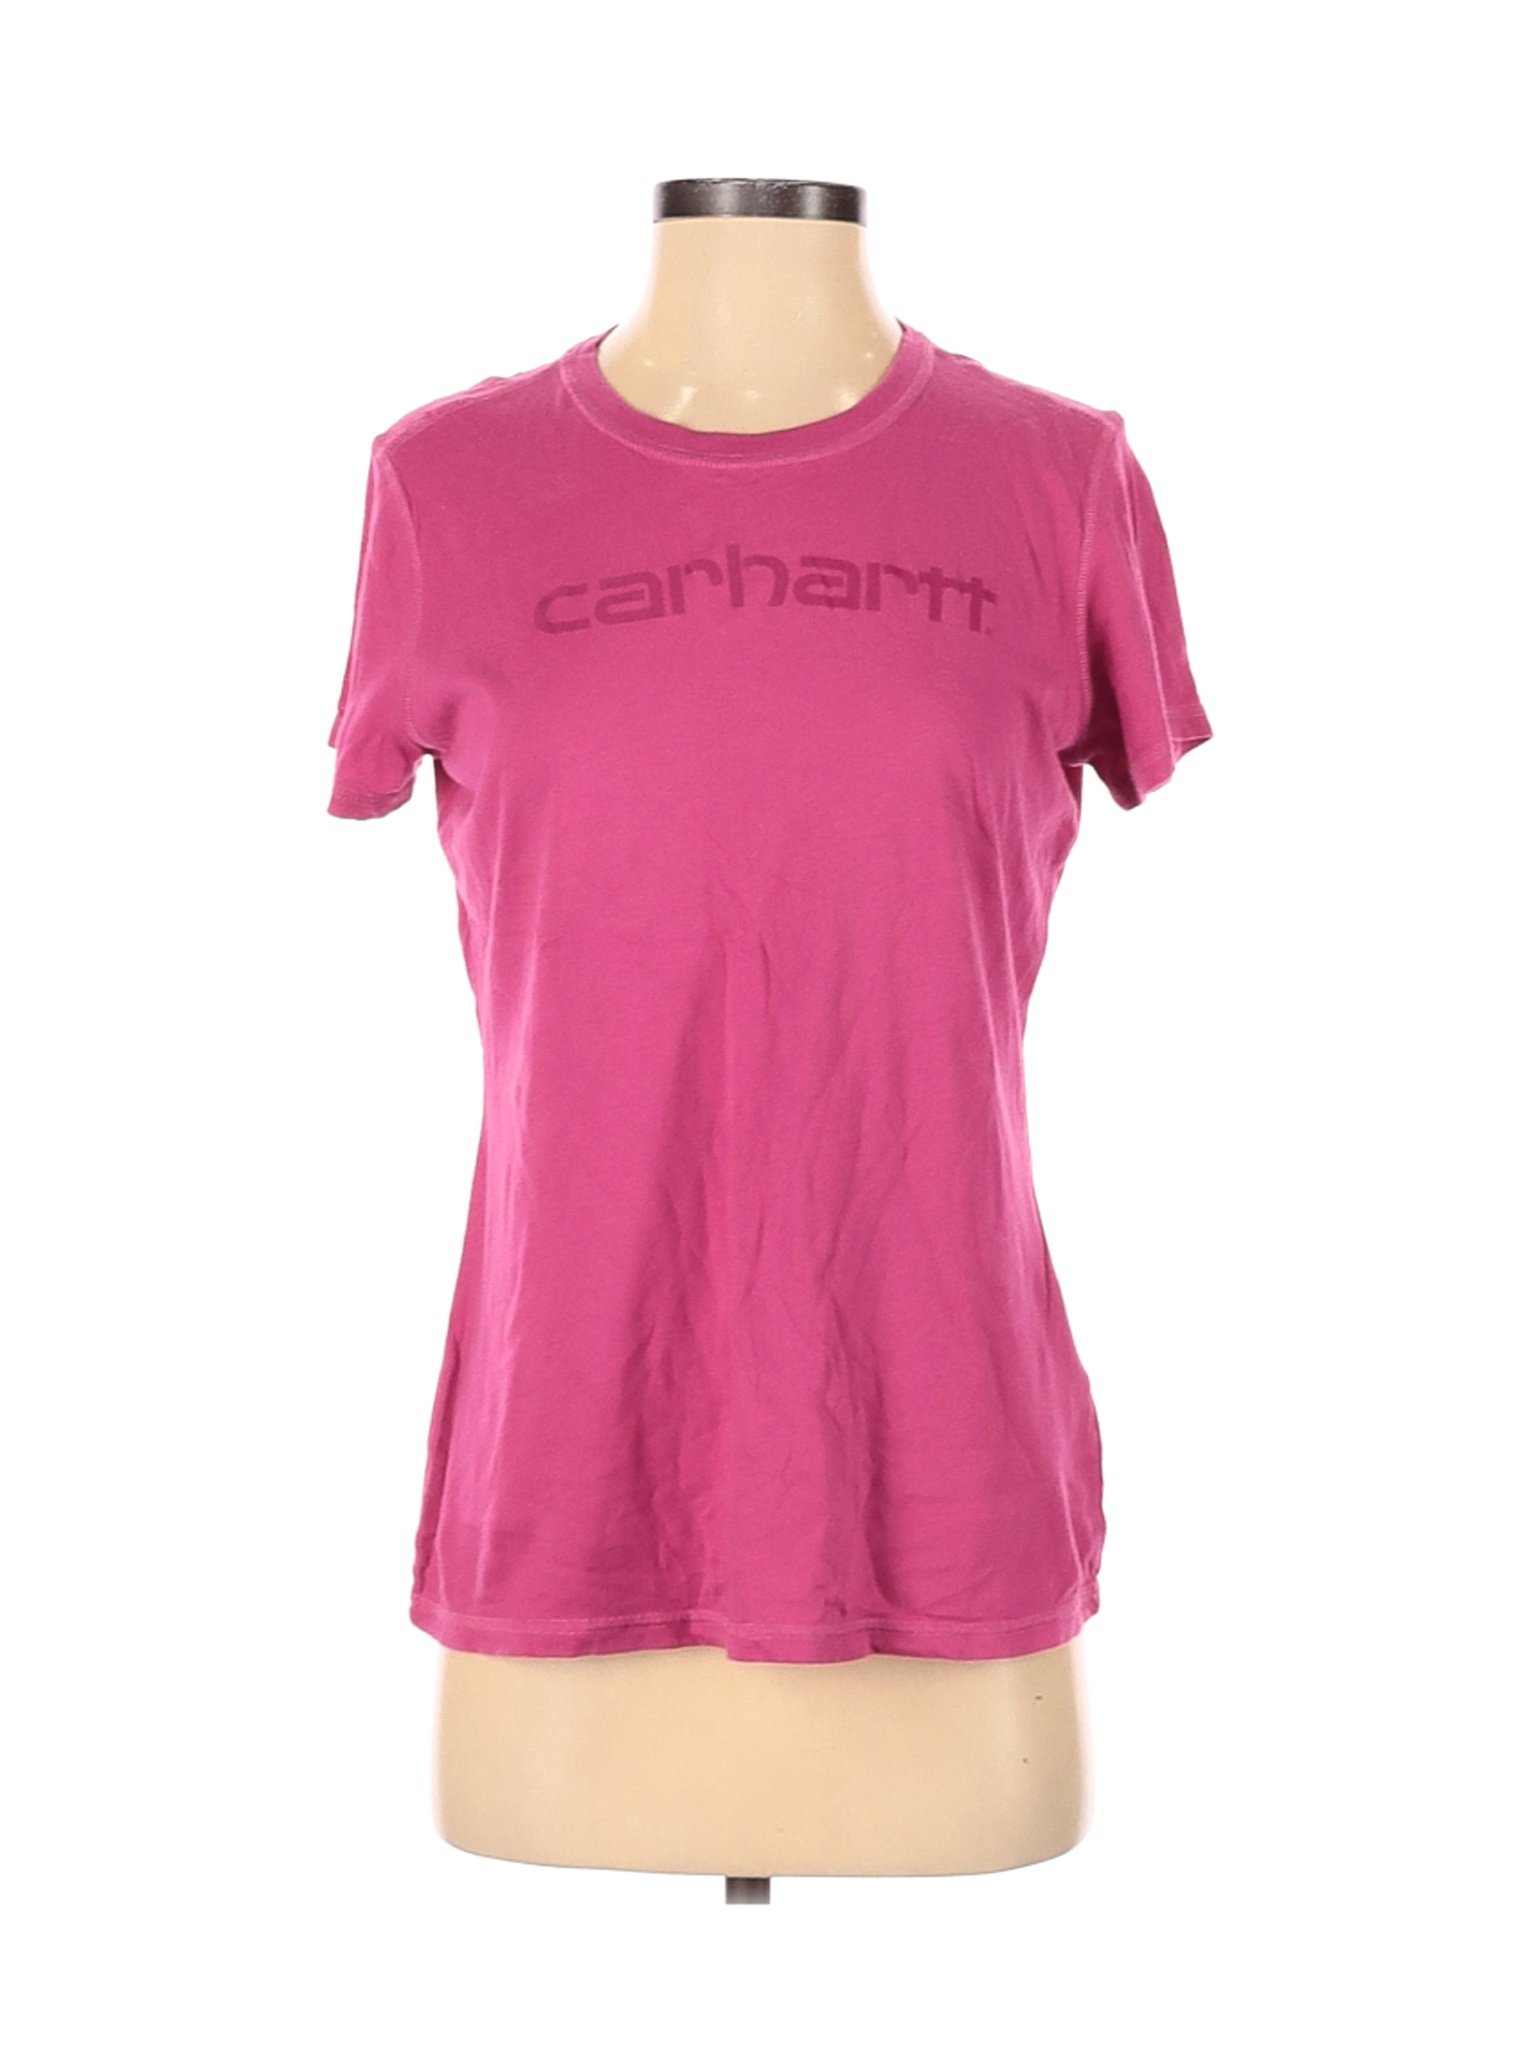 Carhartt Women Pink Short Sleeve T-Shirt S | eBay